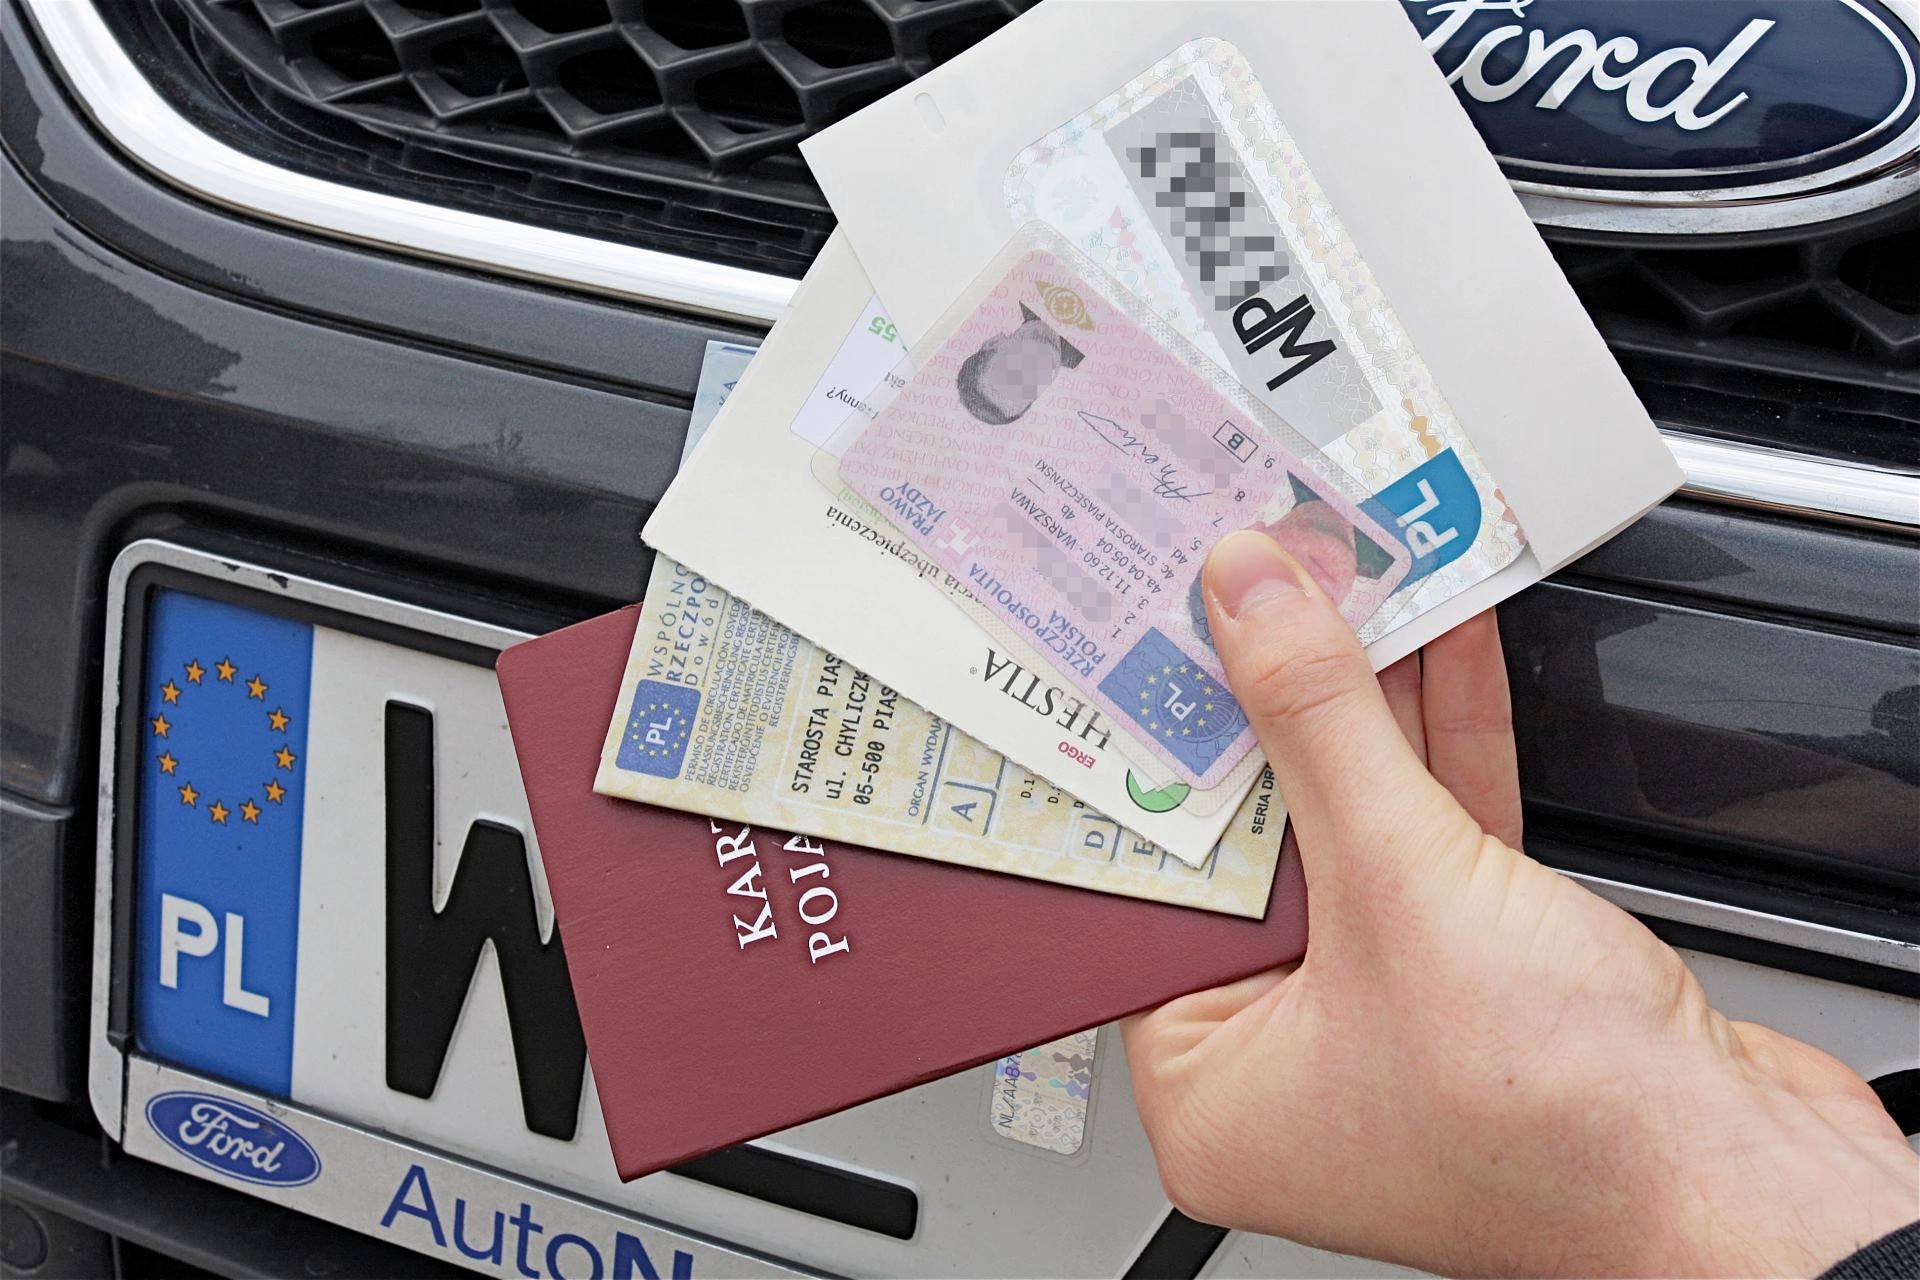 Rejestracja samochodu z LPG: dokumenty i formalności - Wiadomo To!